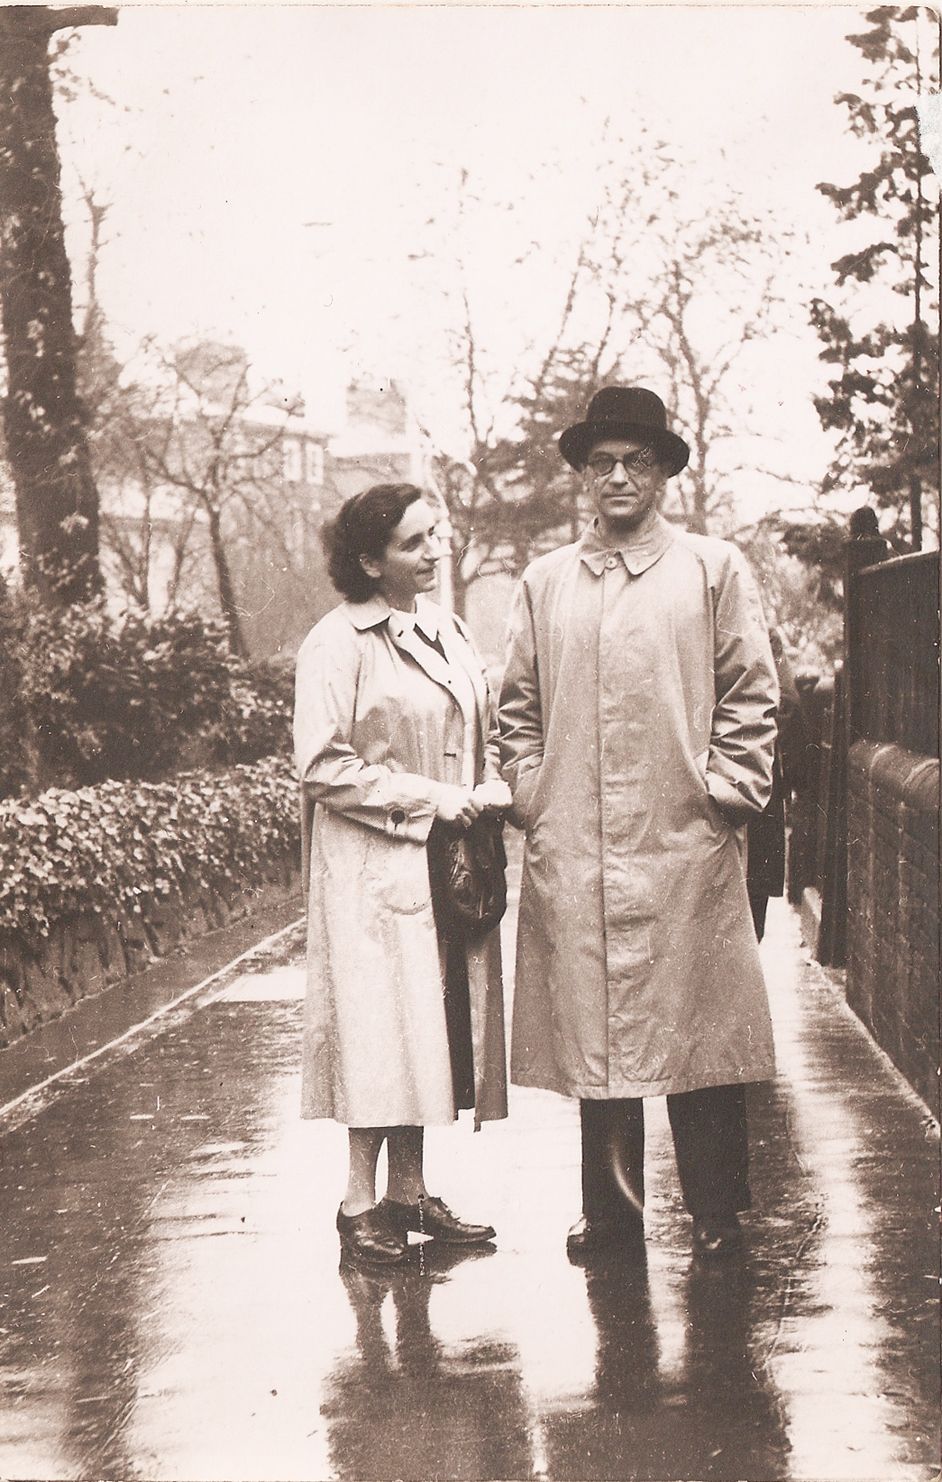 Fotografie: Frau und Mann stehen nebeneinander auf einer Straße